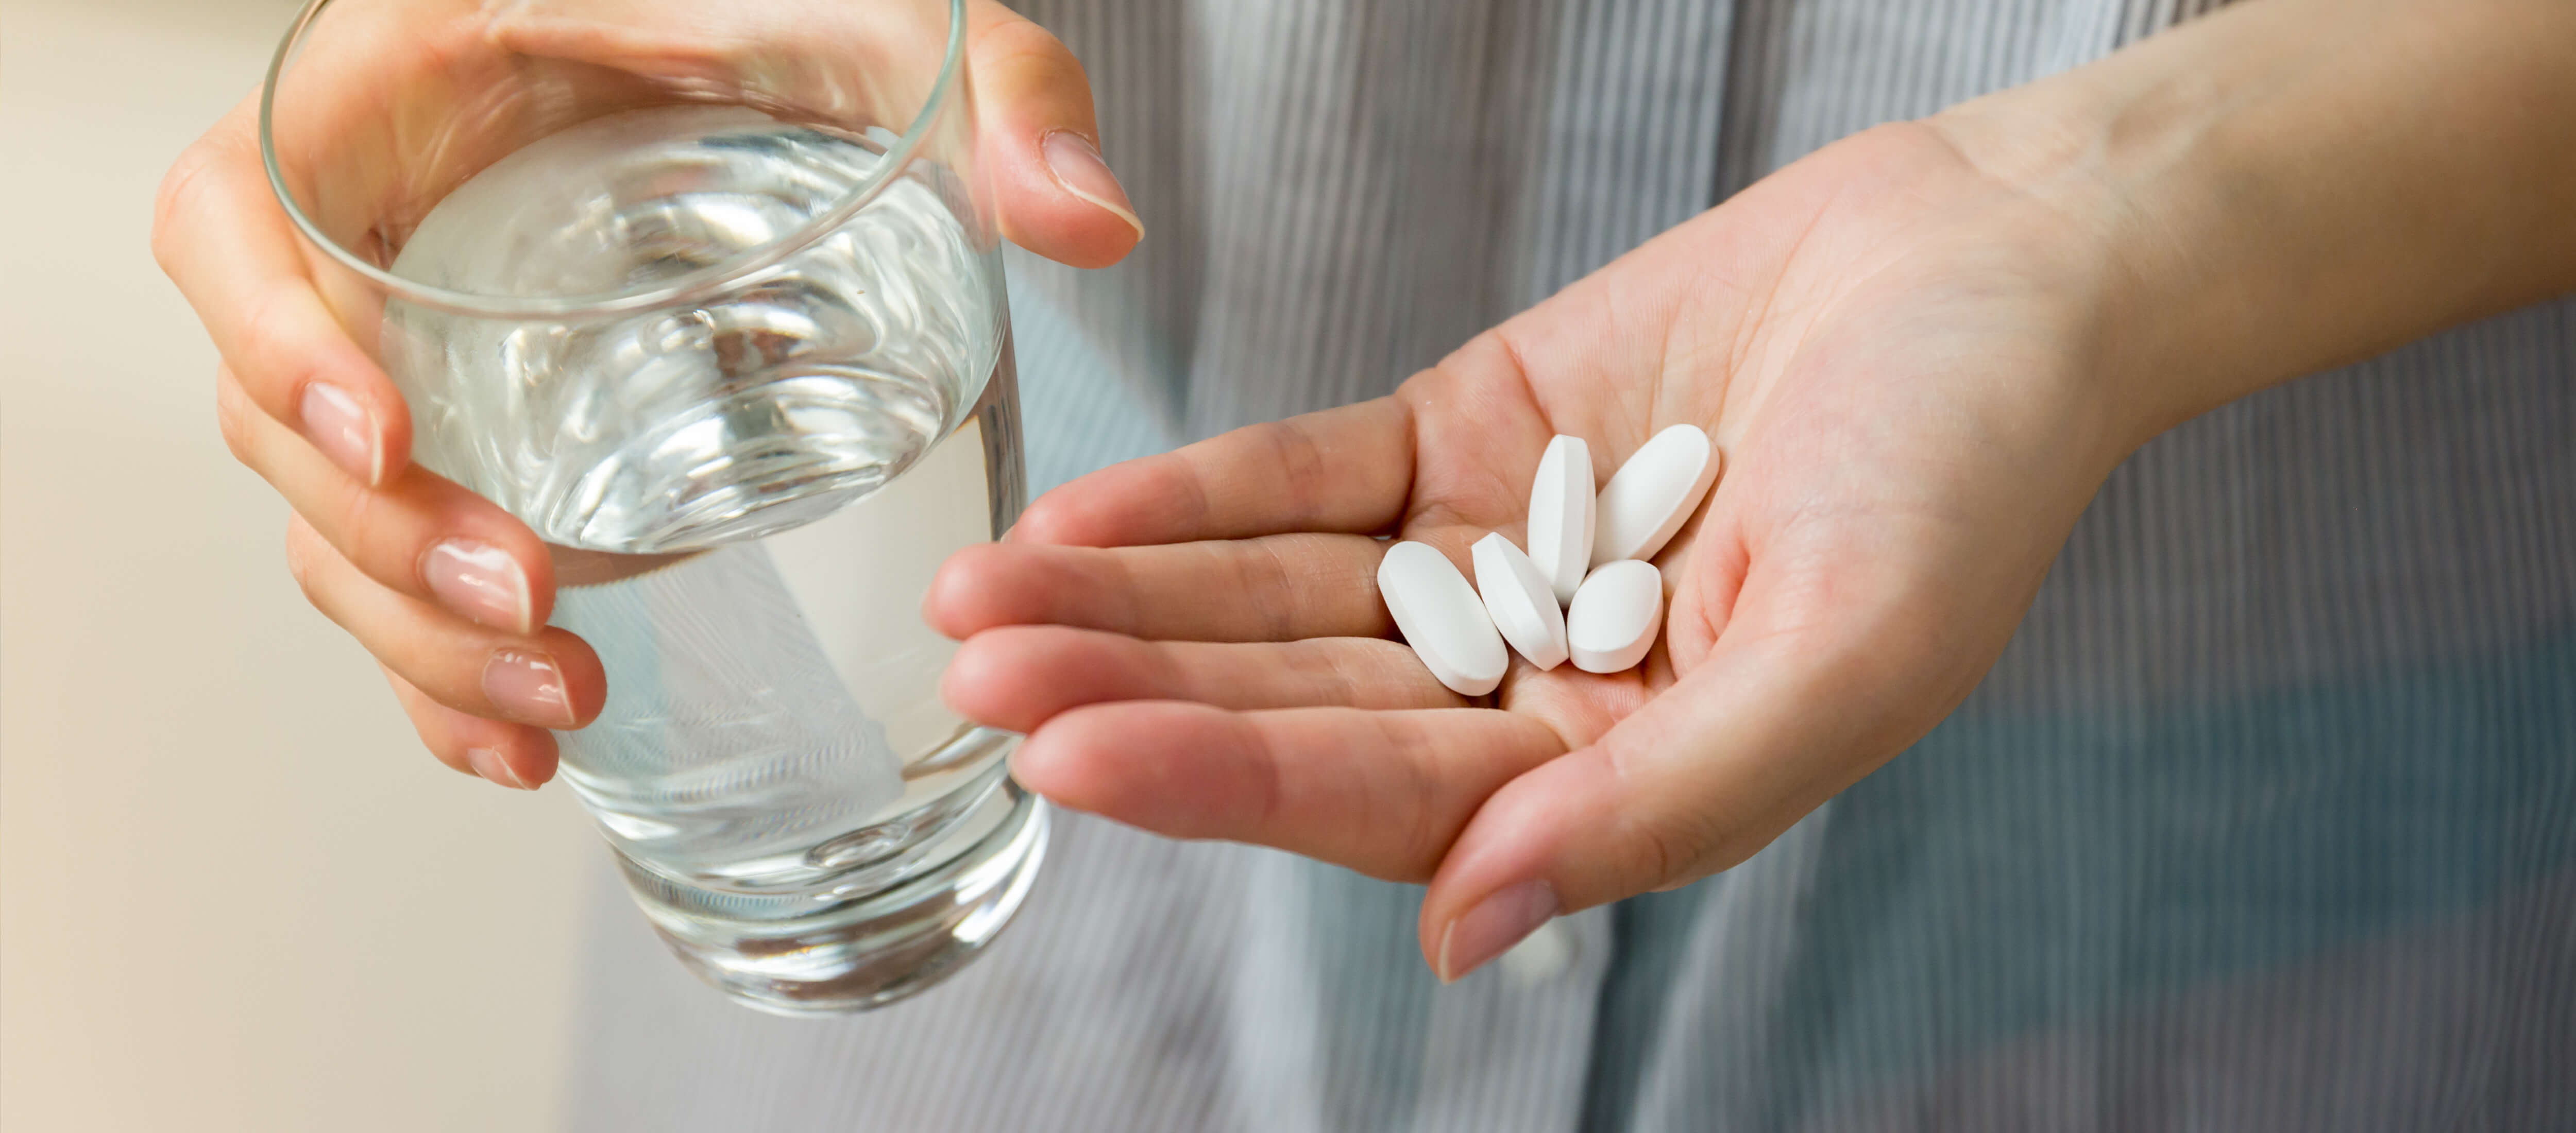 Tabletten und Glas Wasser in Händen